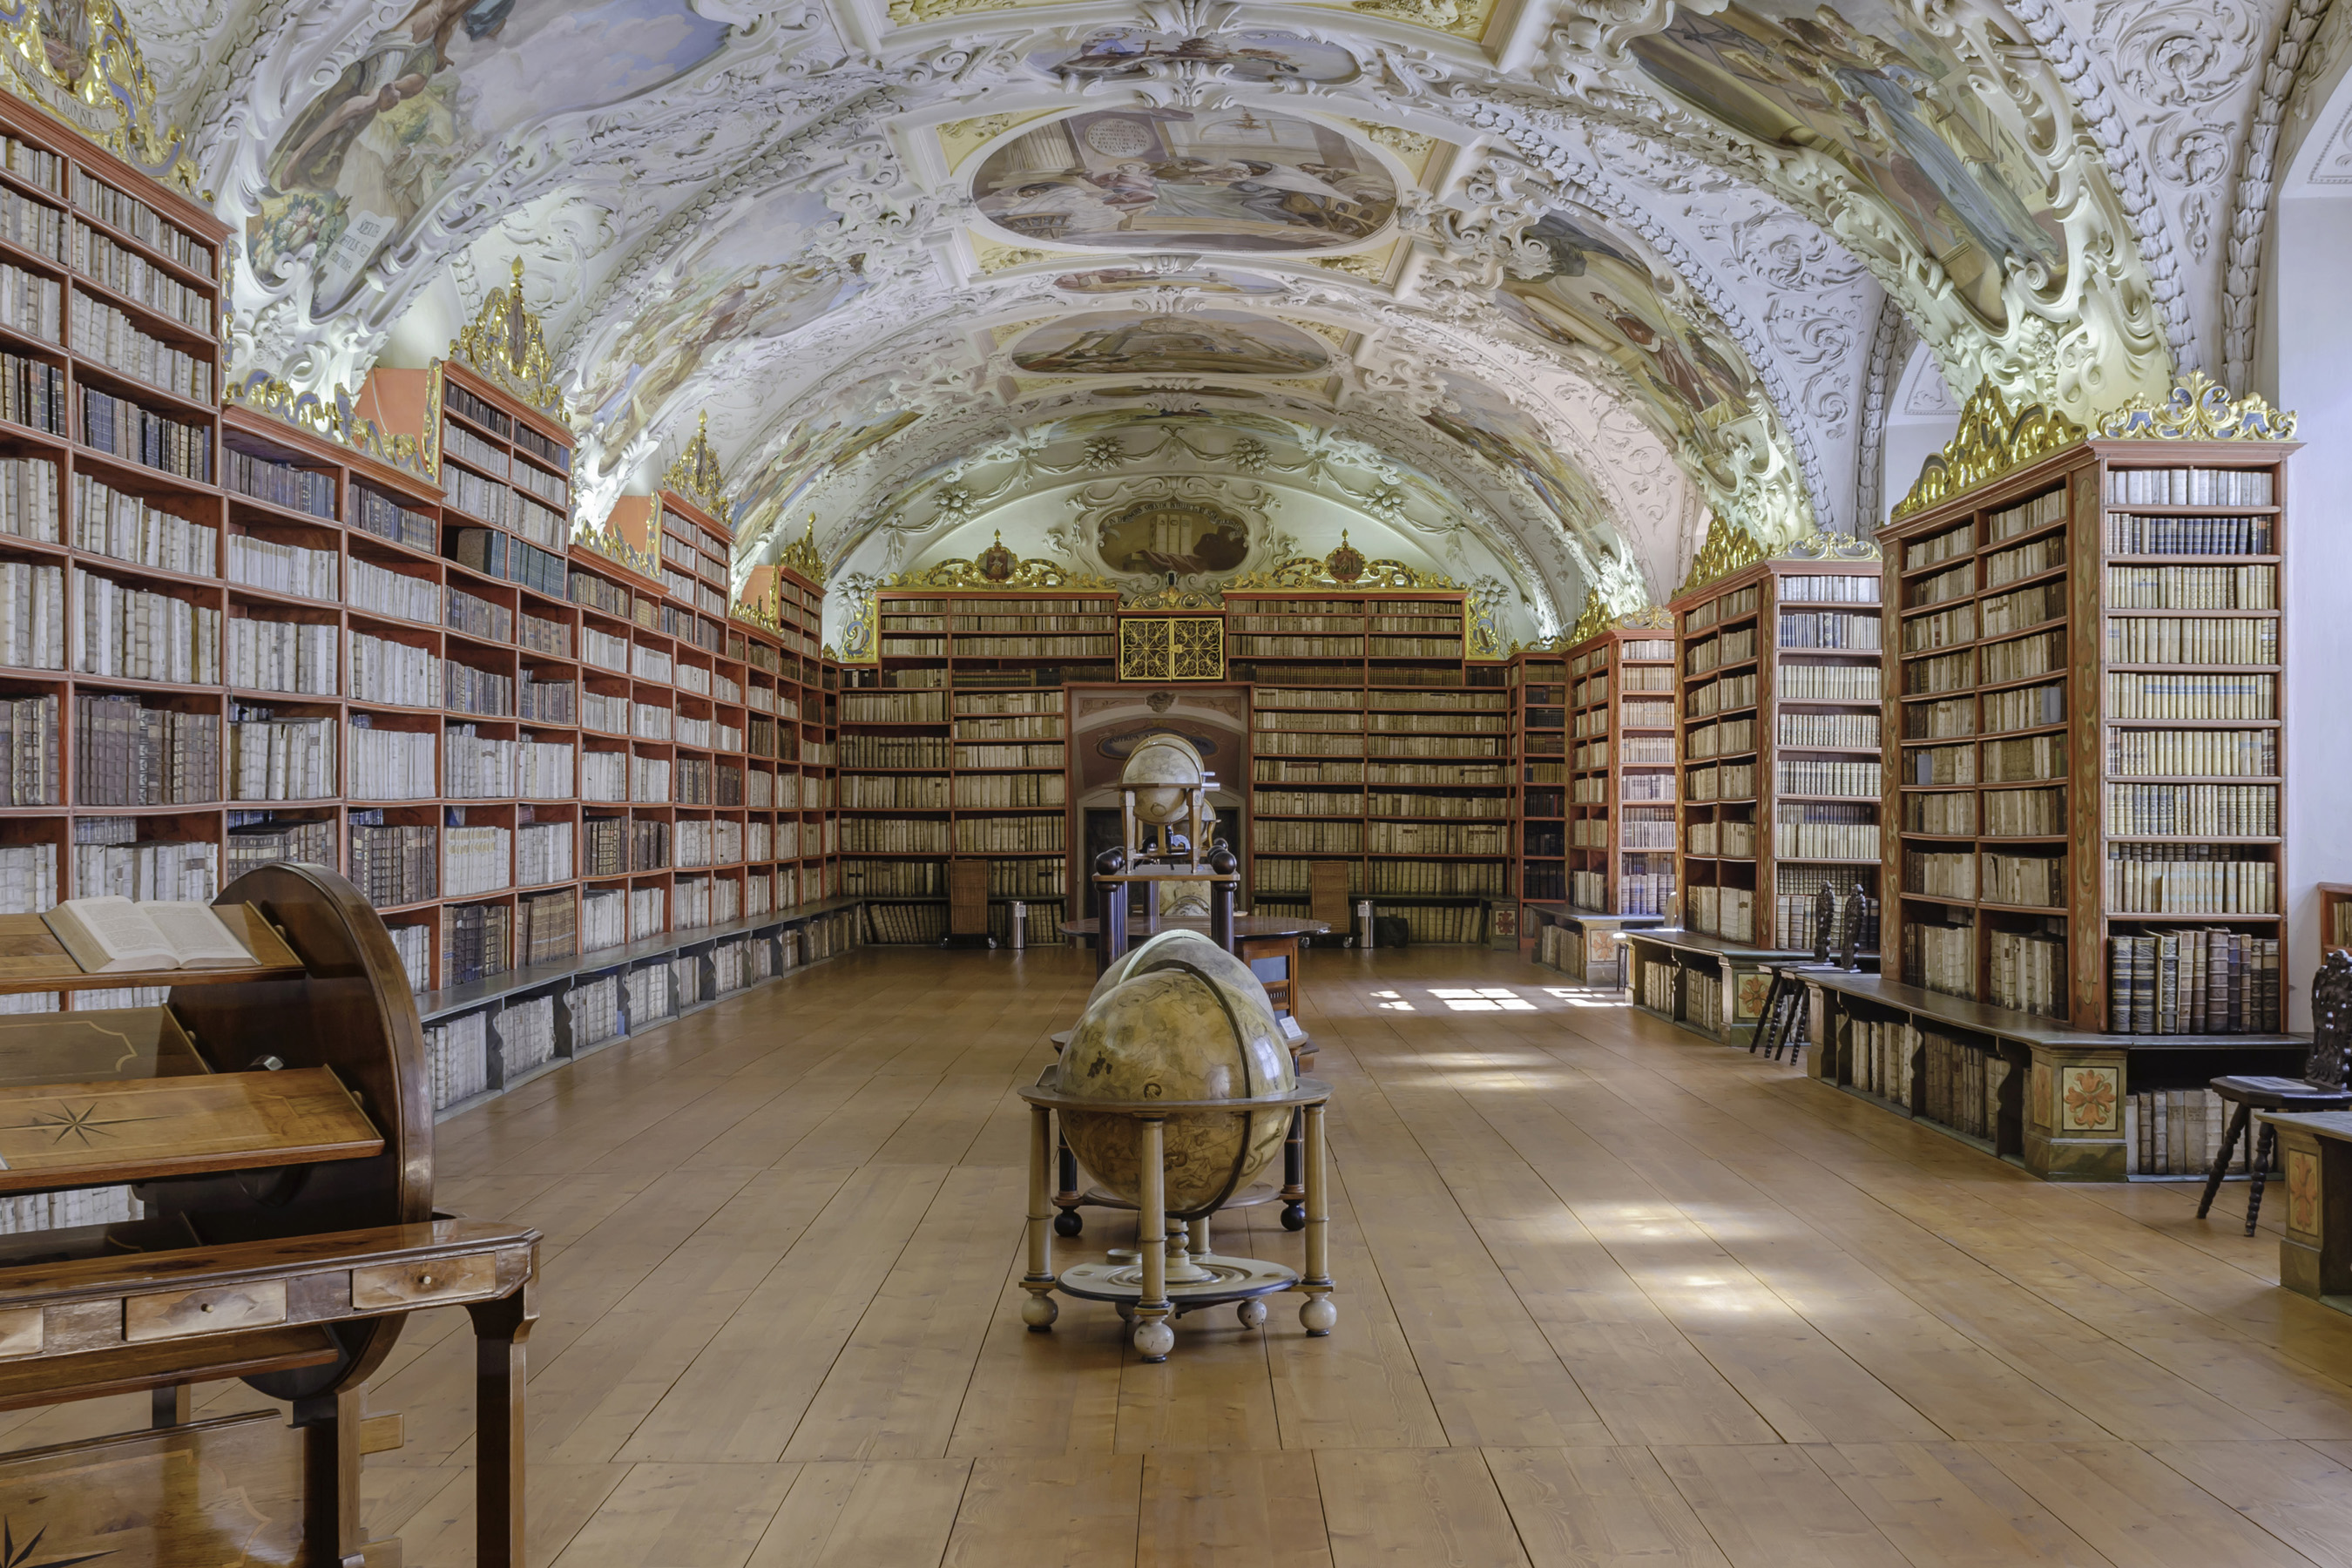 Страховская библиотека, Прага, Чешская Республика. (Любезно предоставлено Ричардом Сильвером)